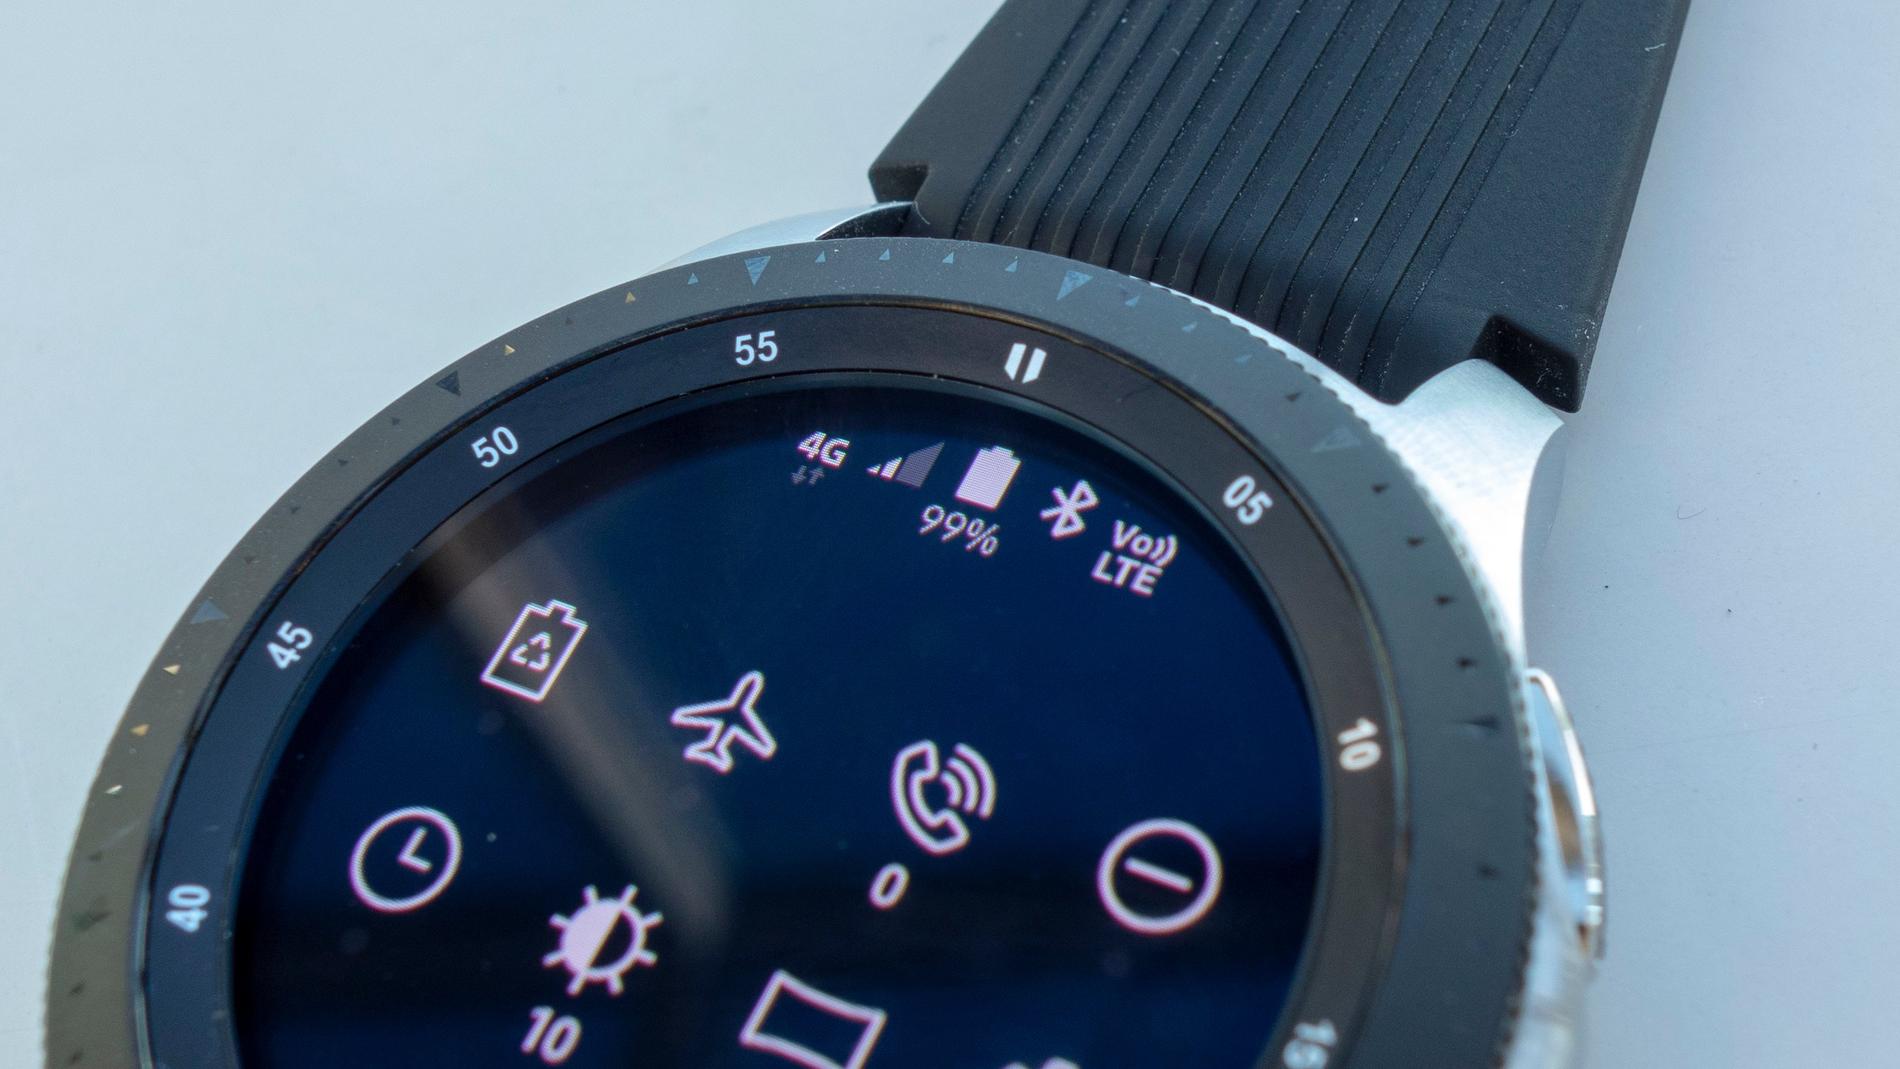 Tekniksajten Tek.no har genomfört ett grundligt test av nya Samsung Galaxy Watch.